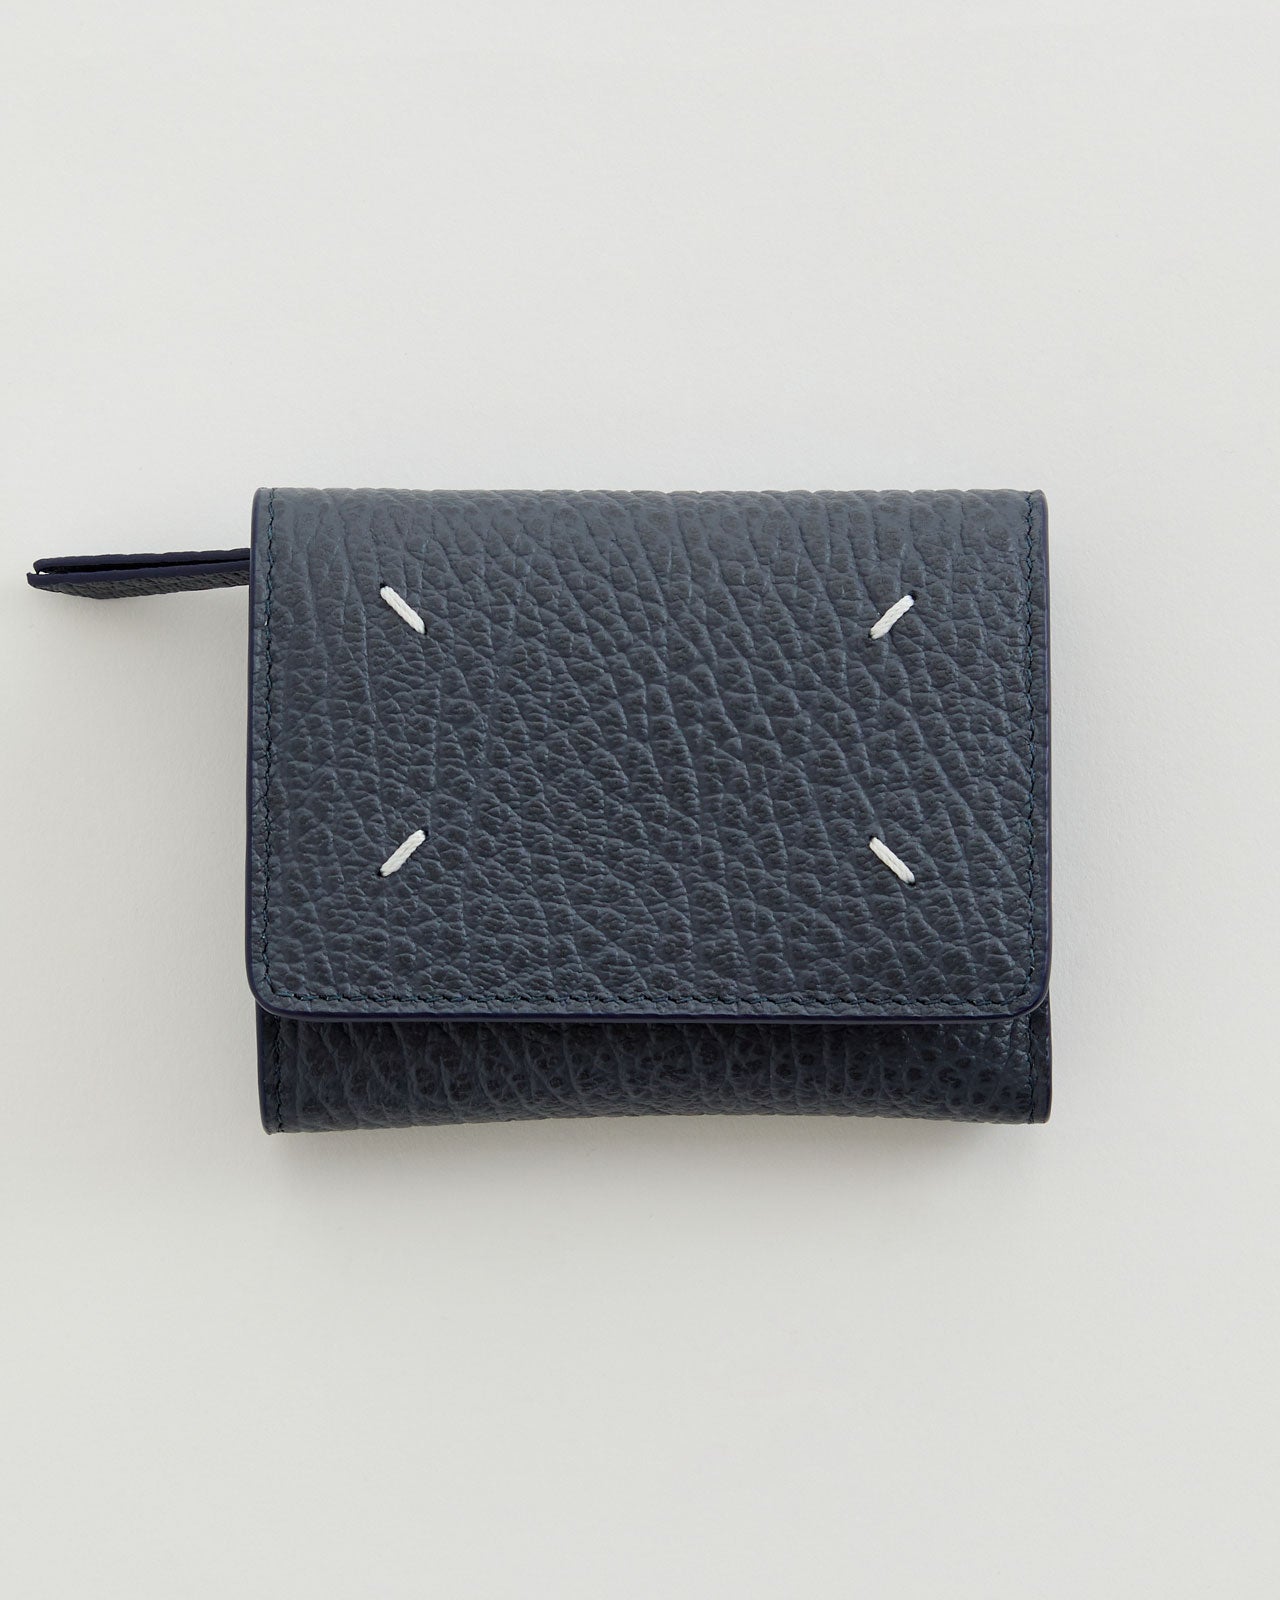 Maison Margiela wallet clip 3 with zip財布カラーについて